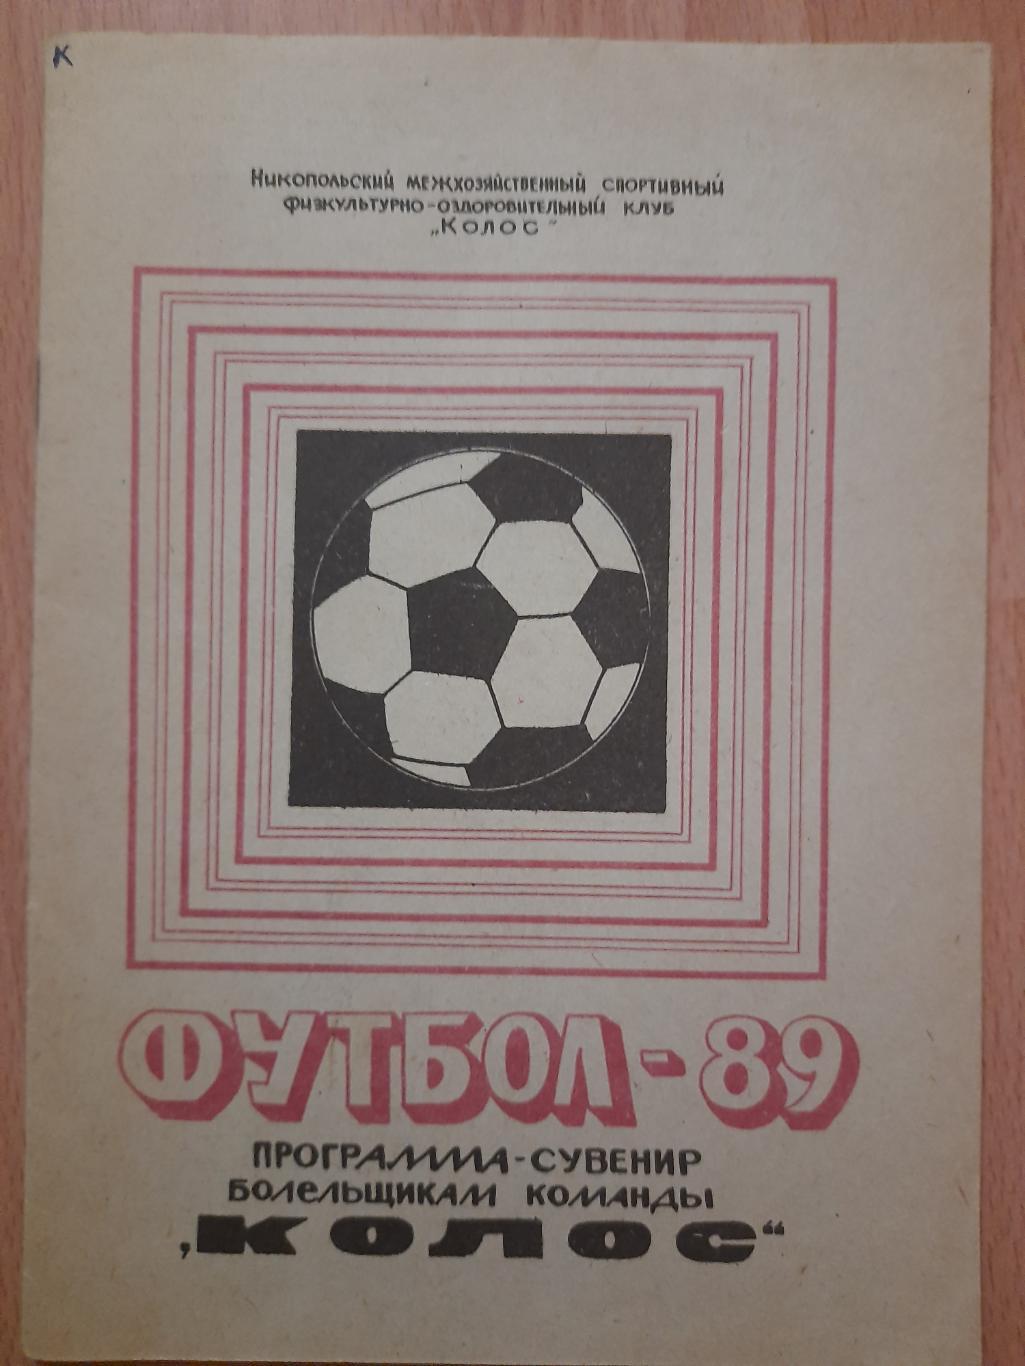 календарь-справочник Футбол 1989 , Колос Никополь.